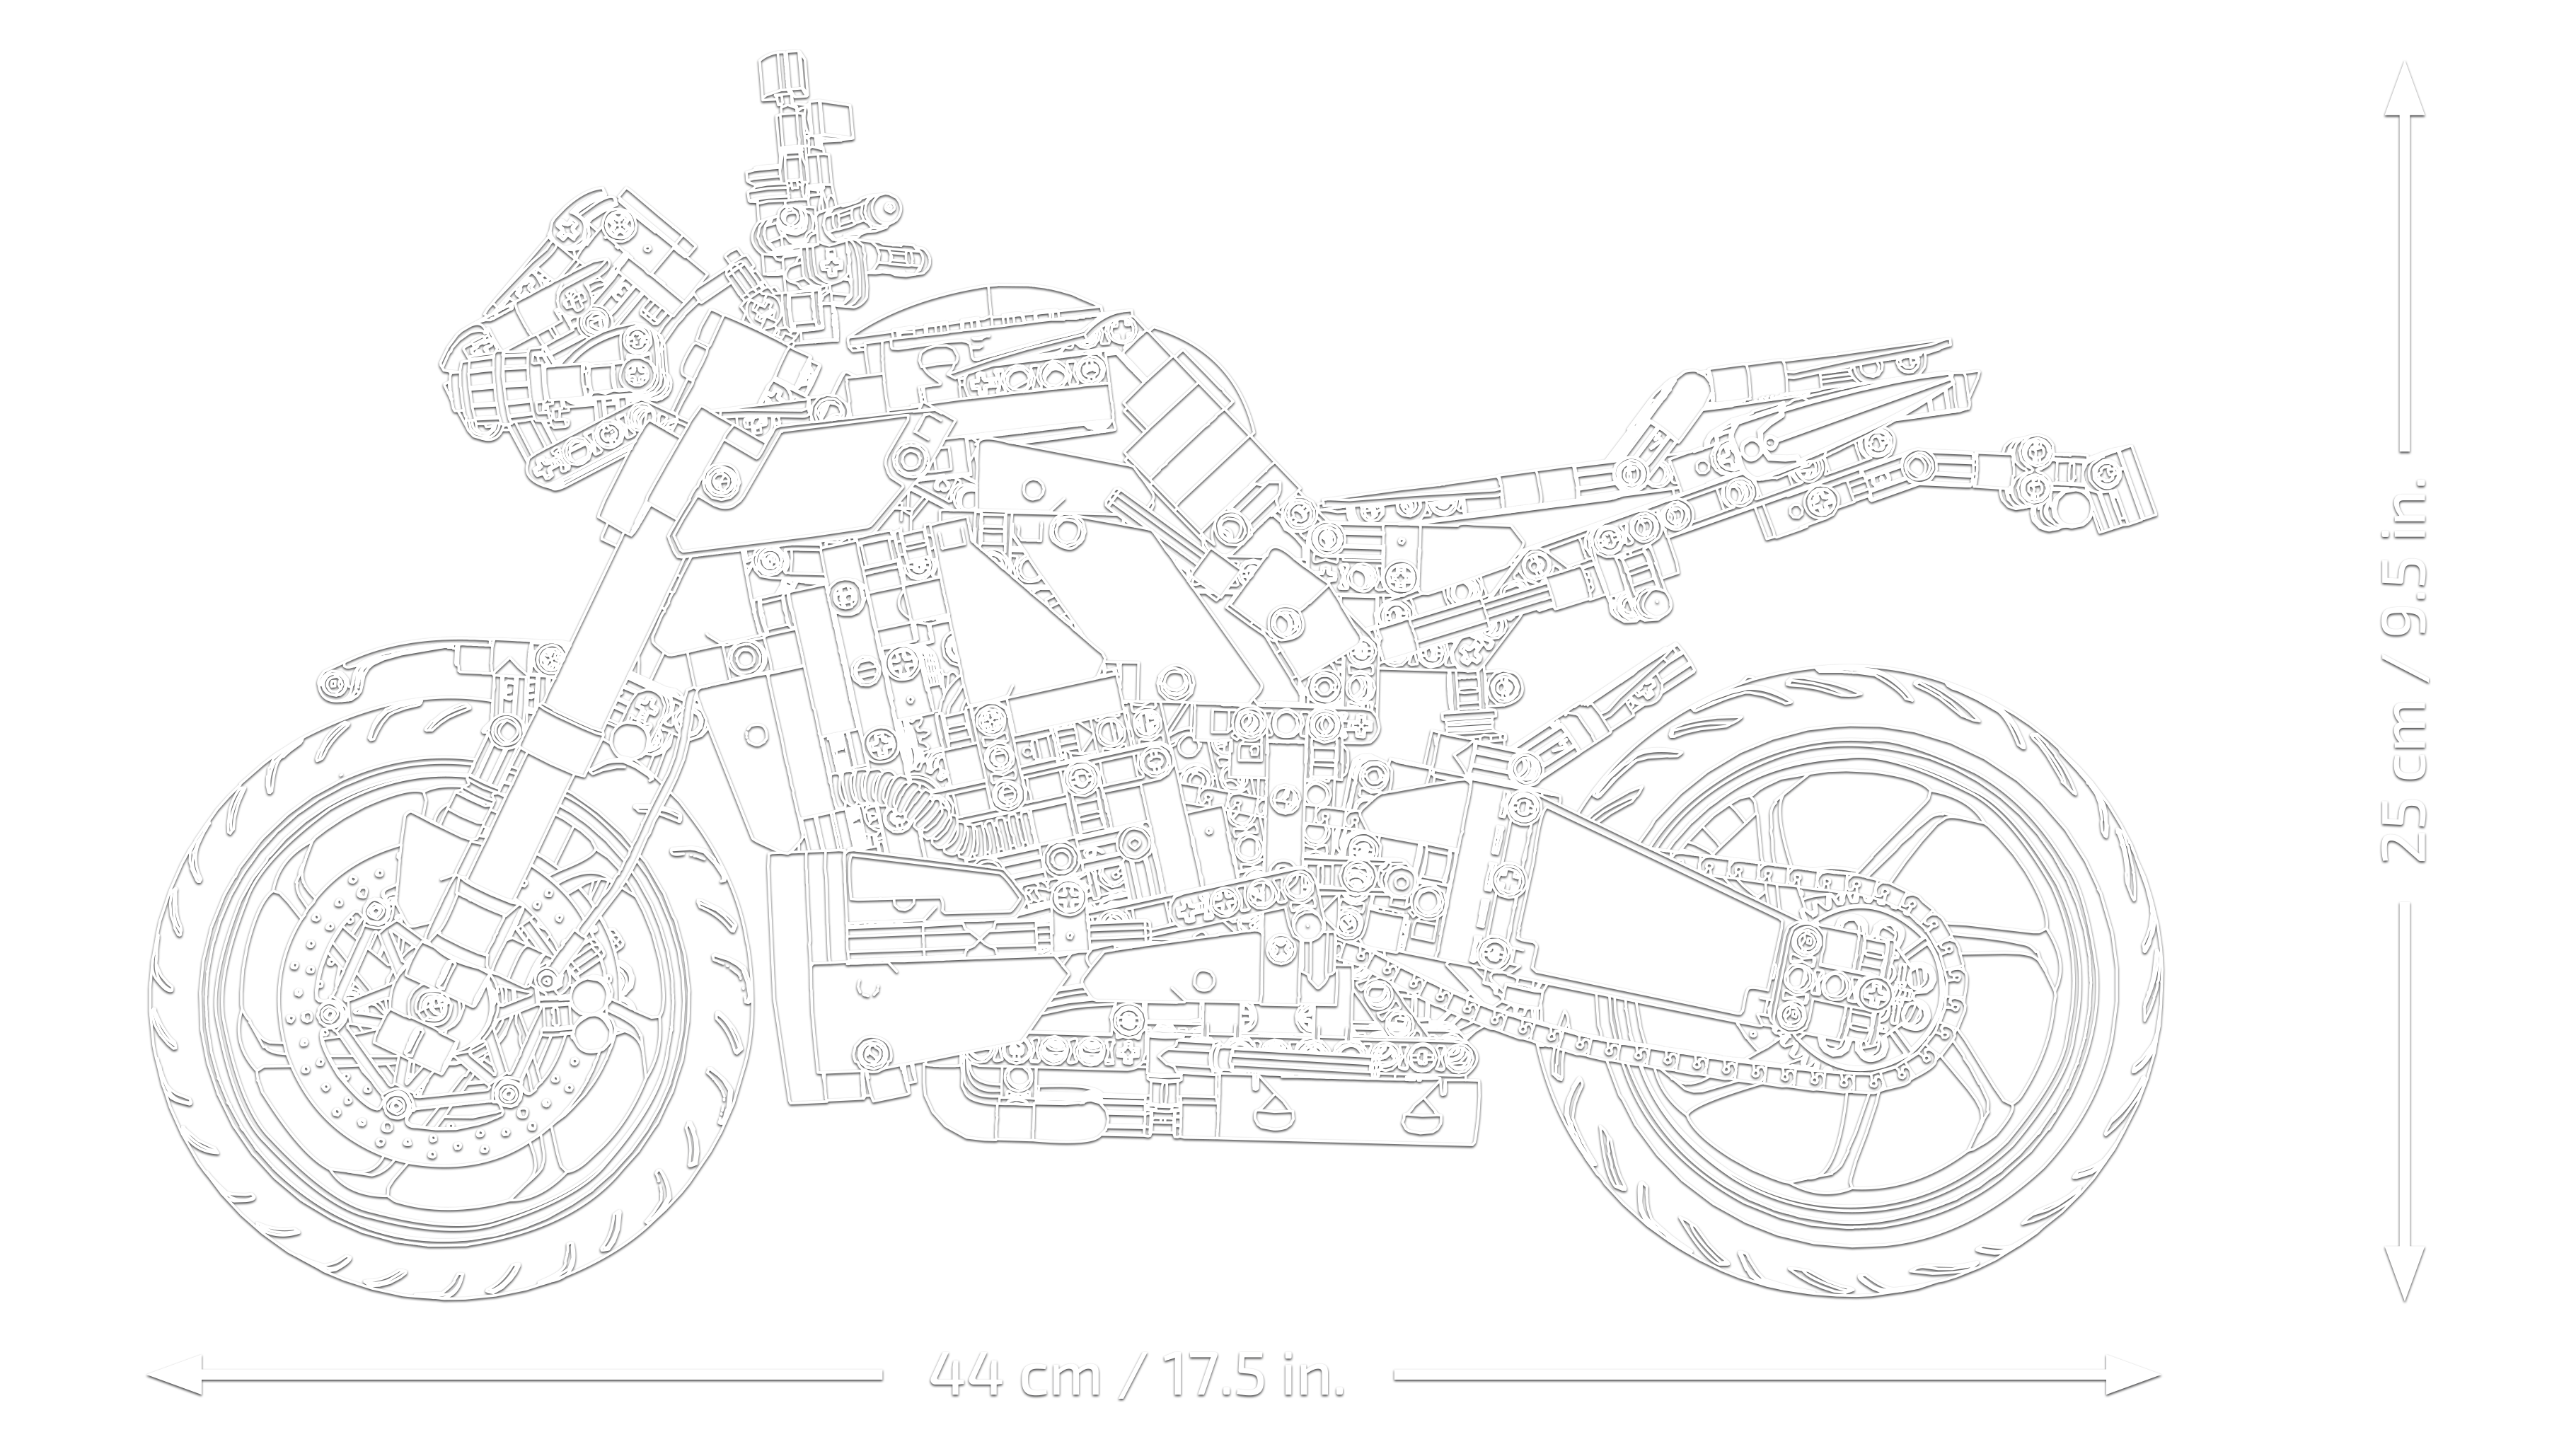 ヤマハ MT-10 SP 42159 - レゴ®テクニックセット - LEGO.comキッズ